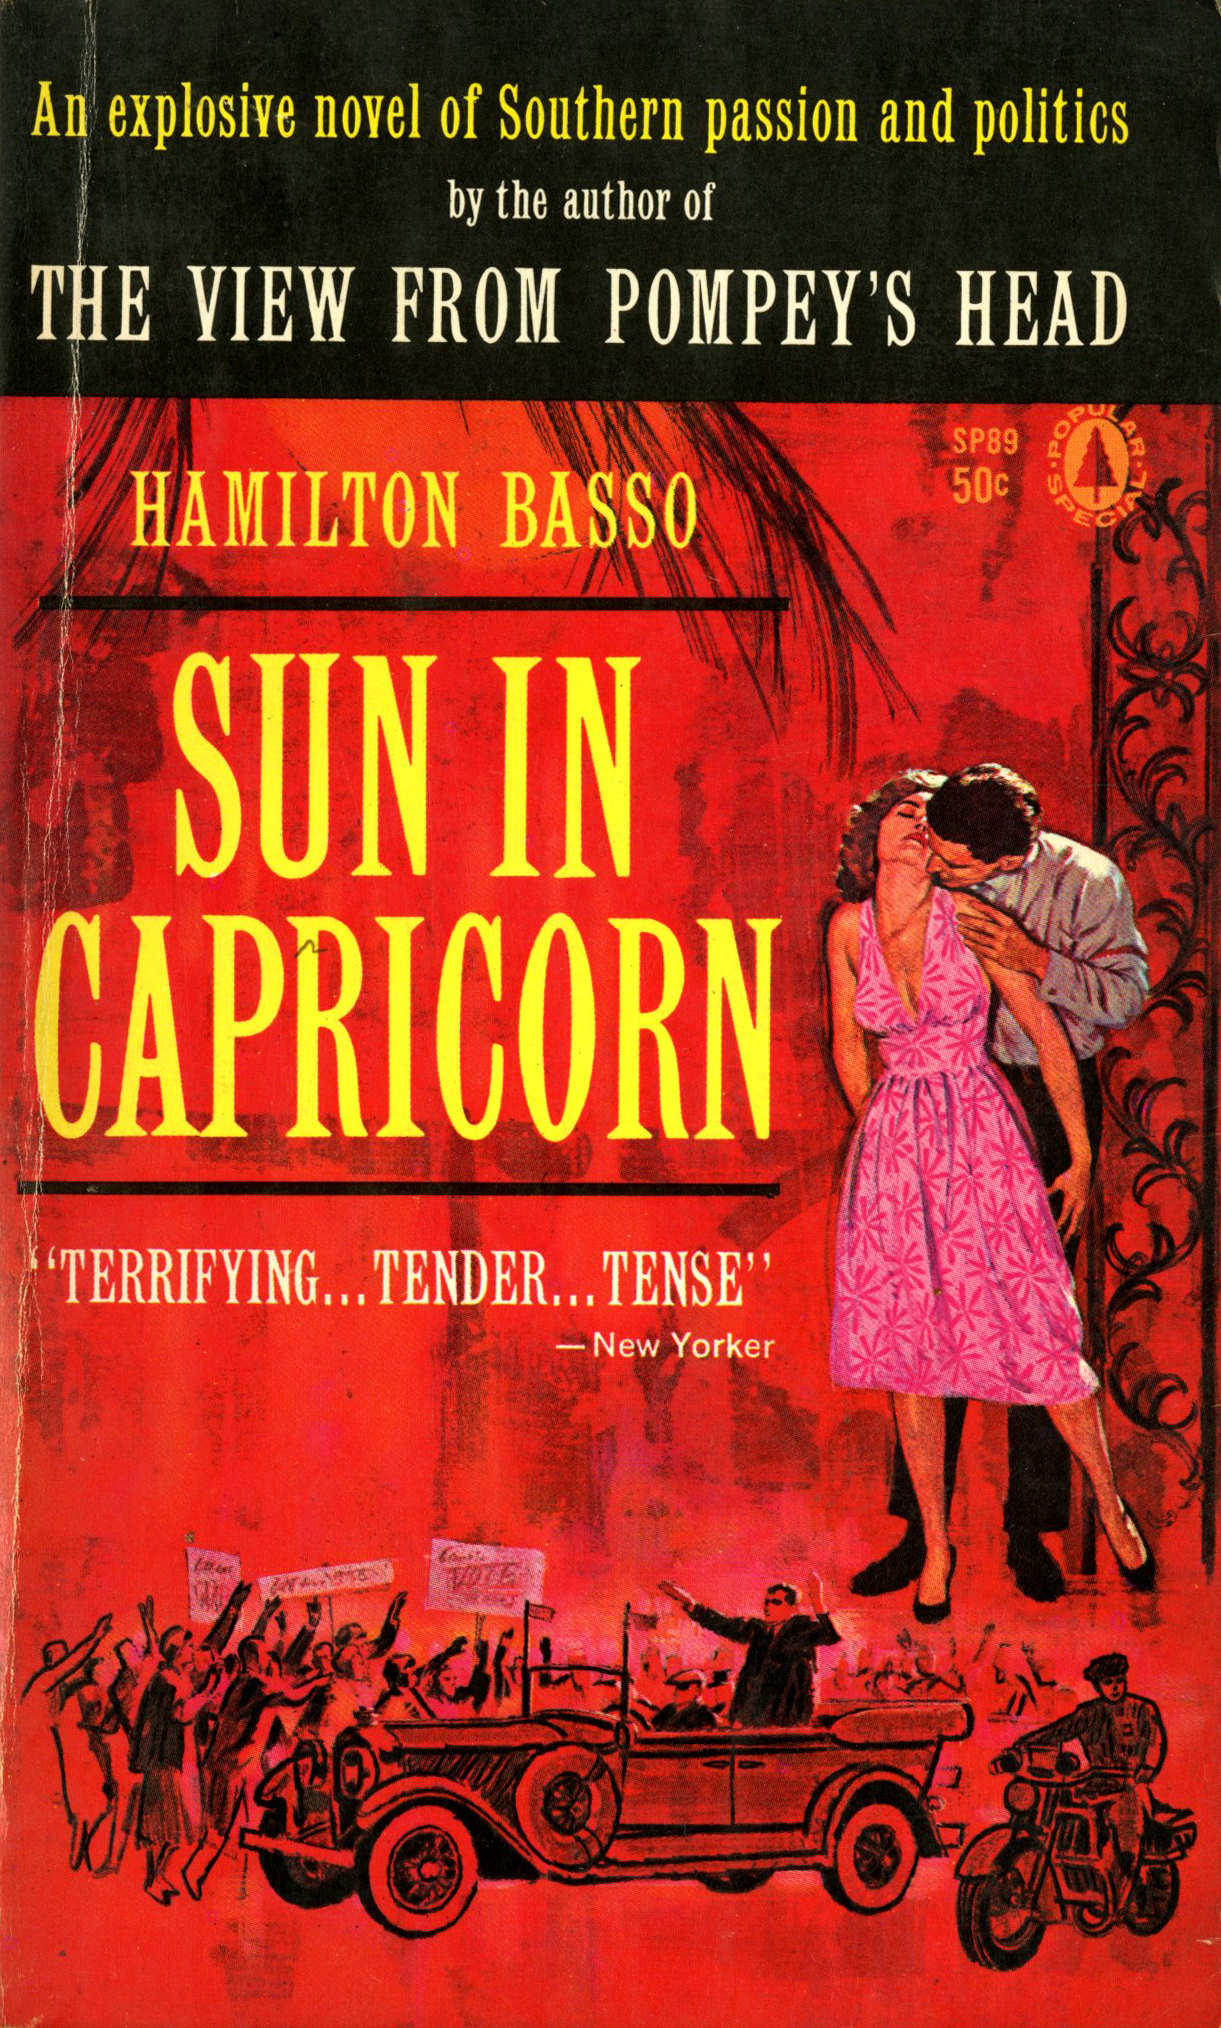 Cover for Basso Hamilton's Sun in Capricorn, 1961